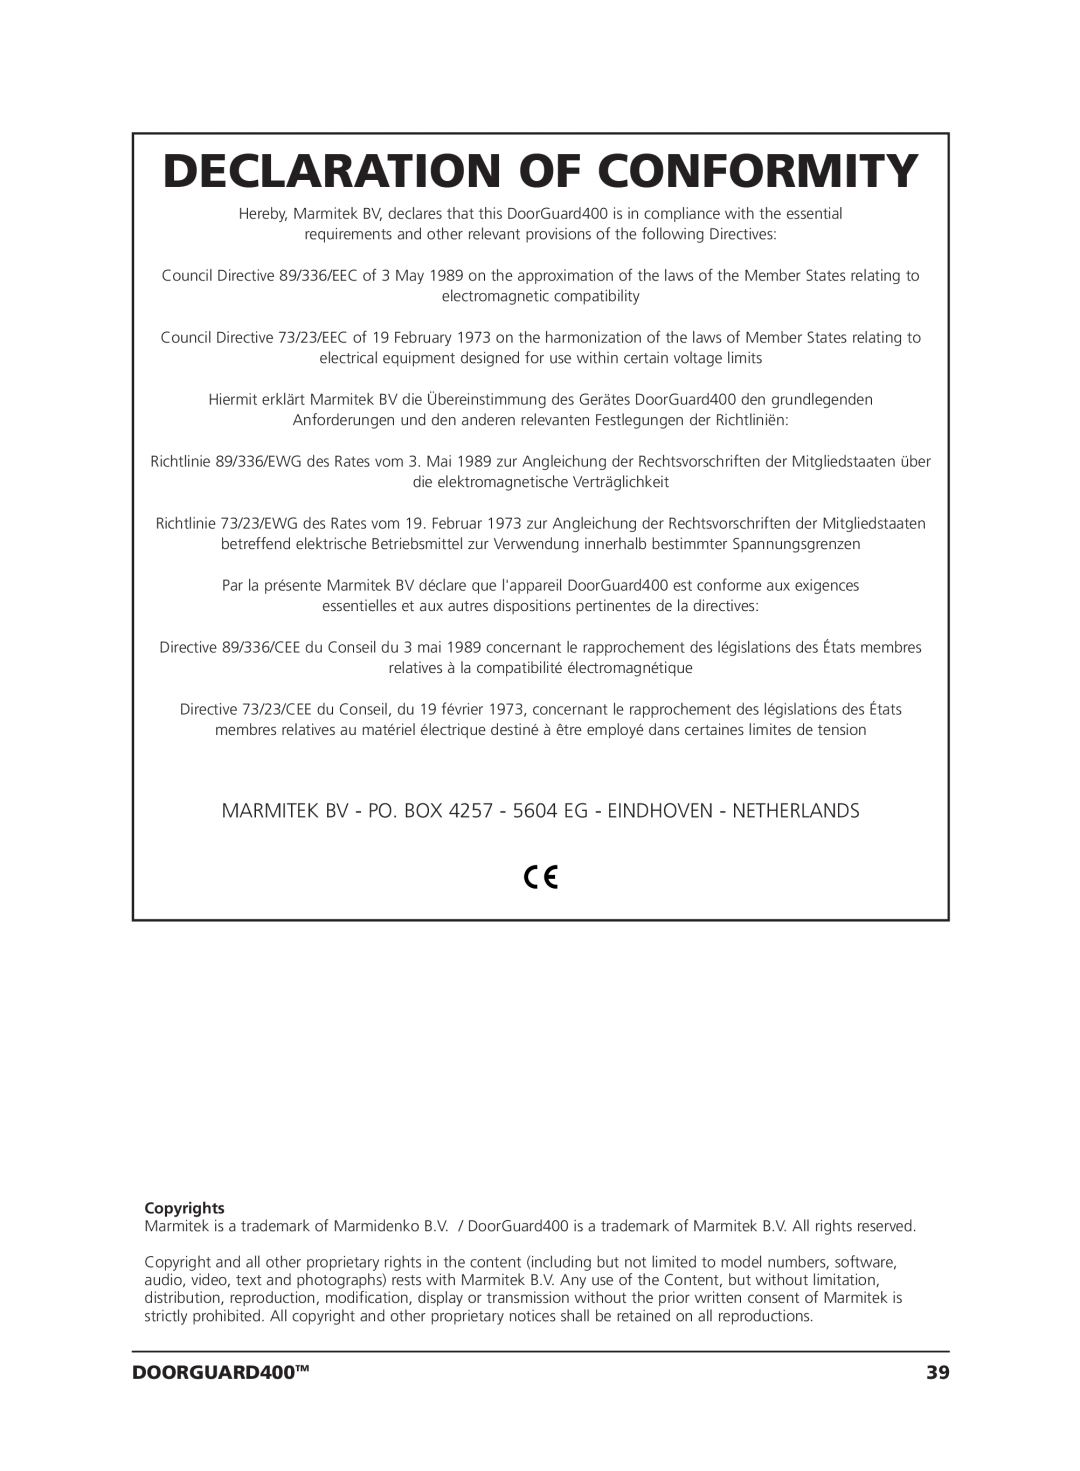 Marmitek VIDEO DOORPHONE user manual Declaration Of Conformity, DOORGUARD400TM, Copyrights 